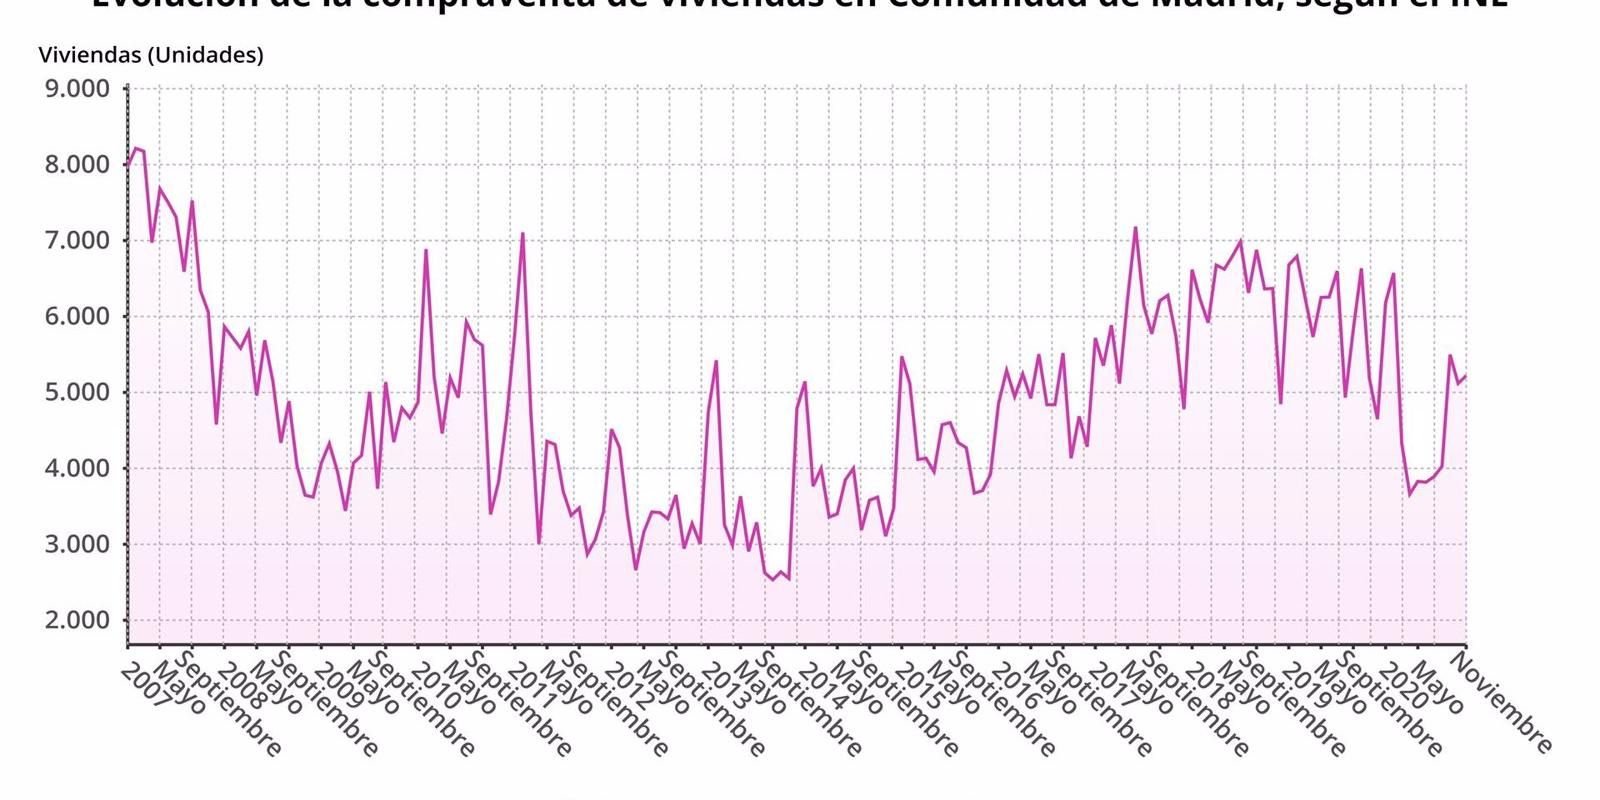 La compraventa de viviendas en la Comunidad de Madrid cambia su tendencia y crece un 0,8% en noviembre